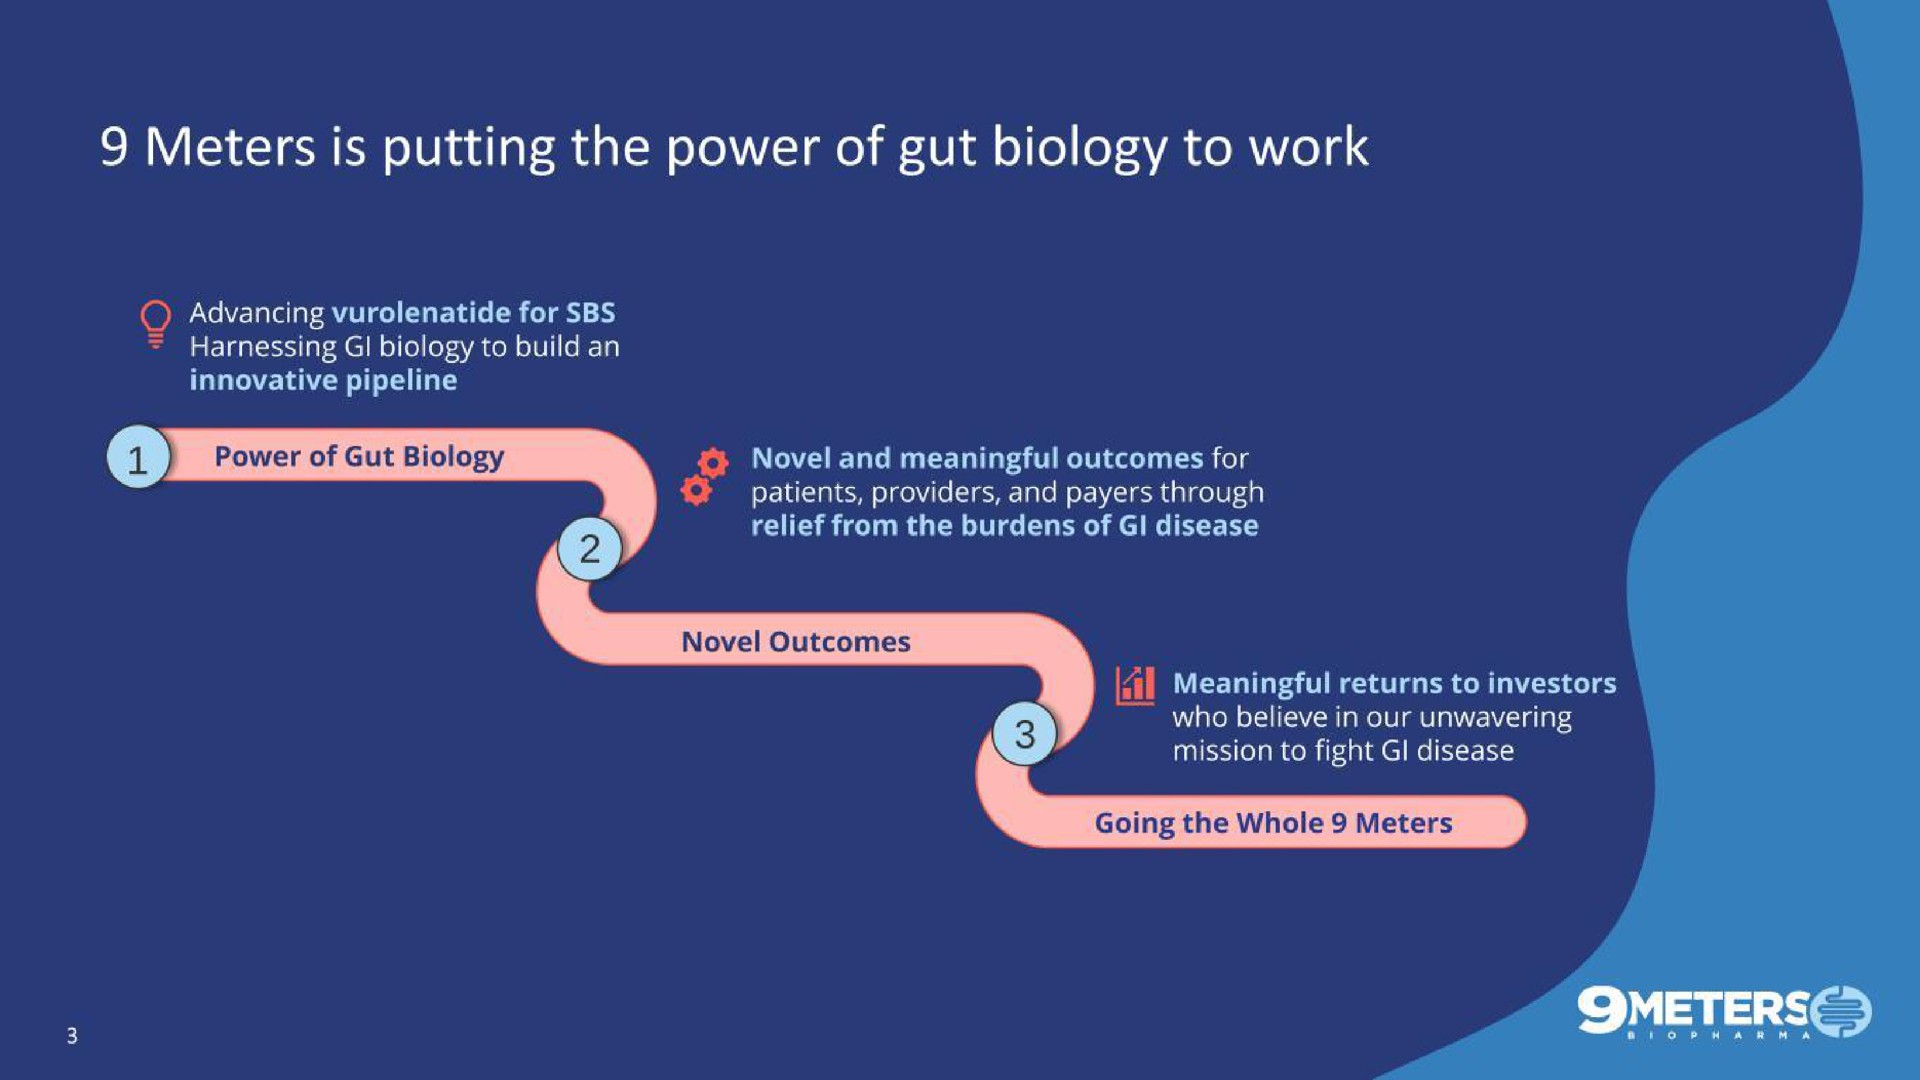 meters is putting the power of gut biology to work | 9 Meters Biopharma